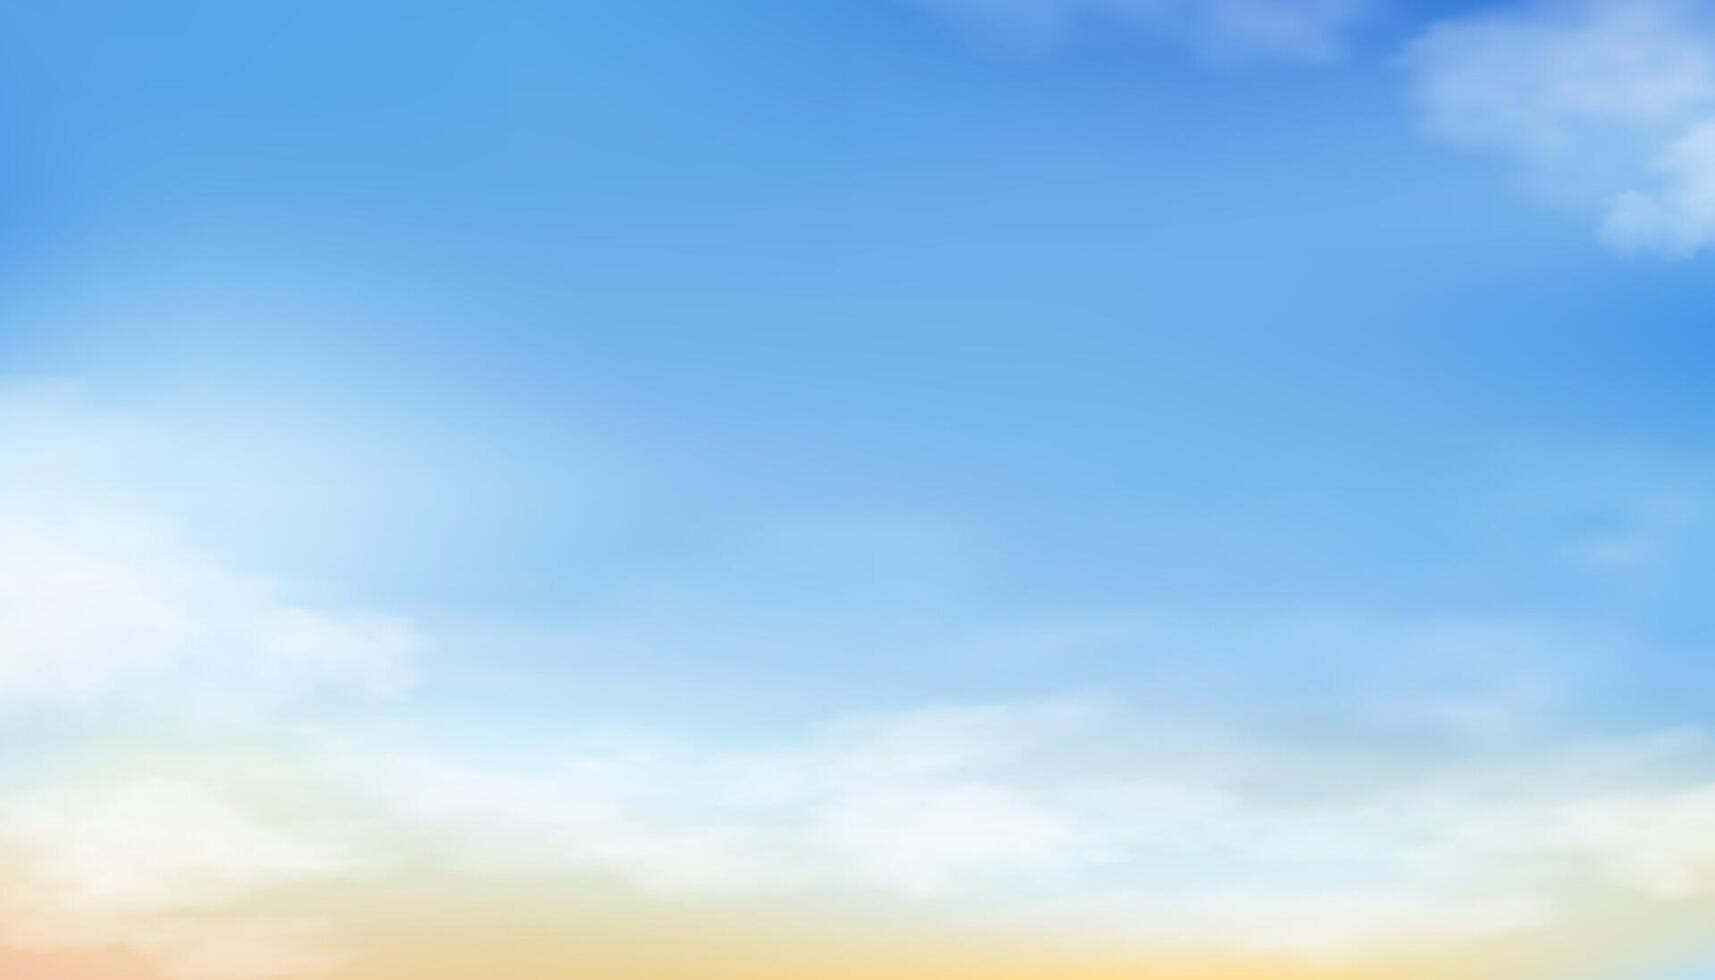 Himmel blau, Wolke Hintergrund, Horizont Frühling klar Himmel im Morgen durch das Strand, Vektor schön Landschaft Natur Sonnenaufgang im Sommer, Hintergrund Panorama- Banner Weiß Sanft flauschige Wolken